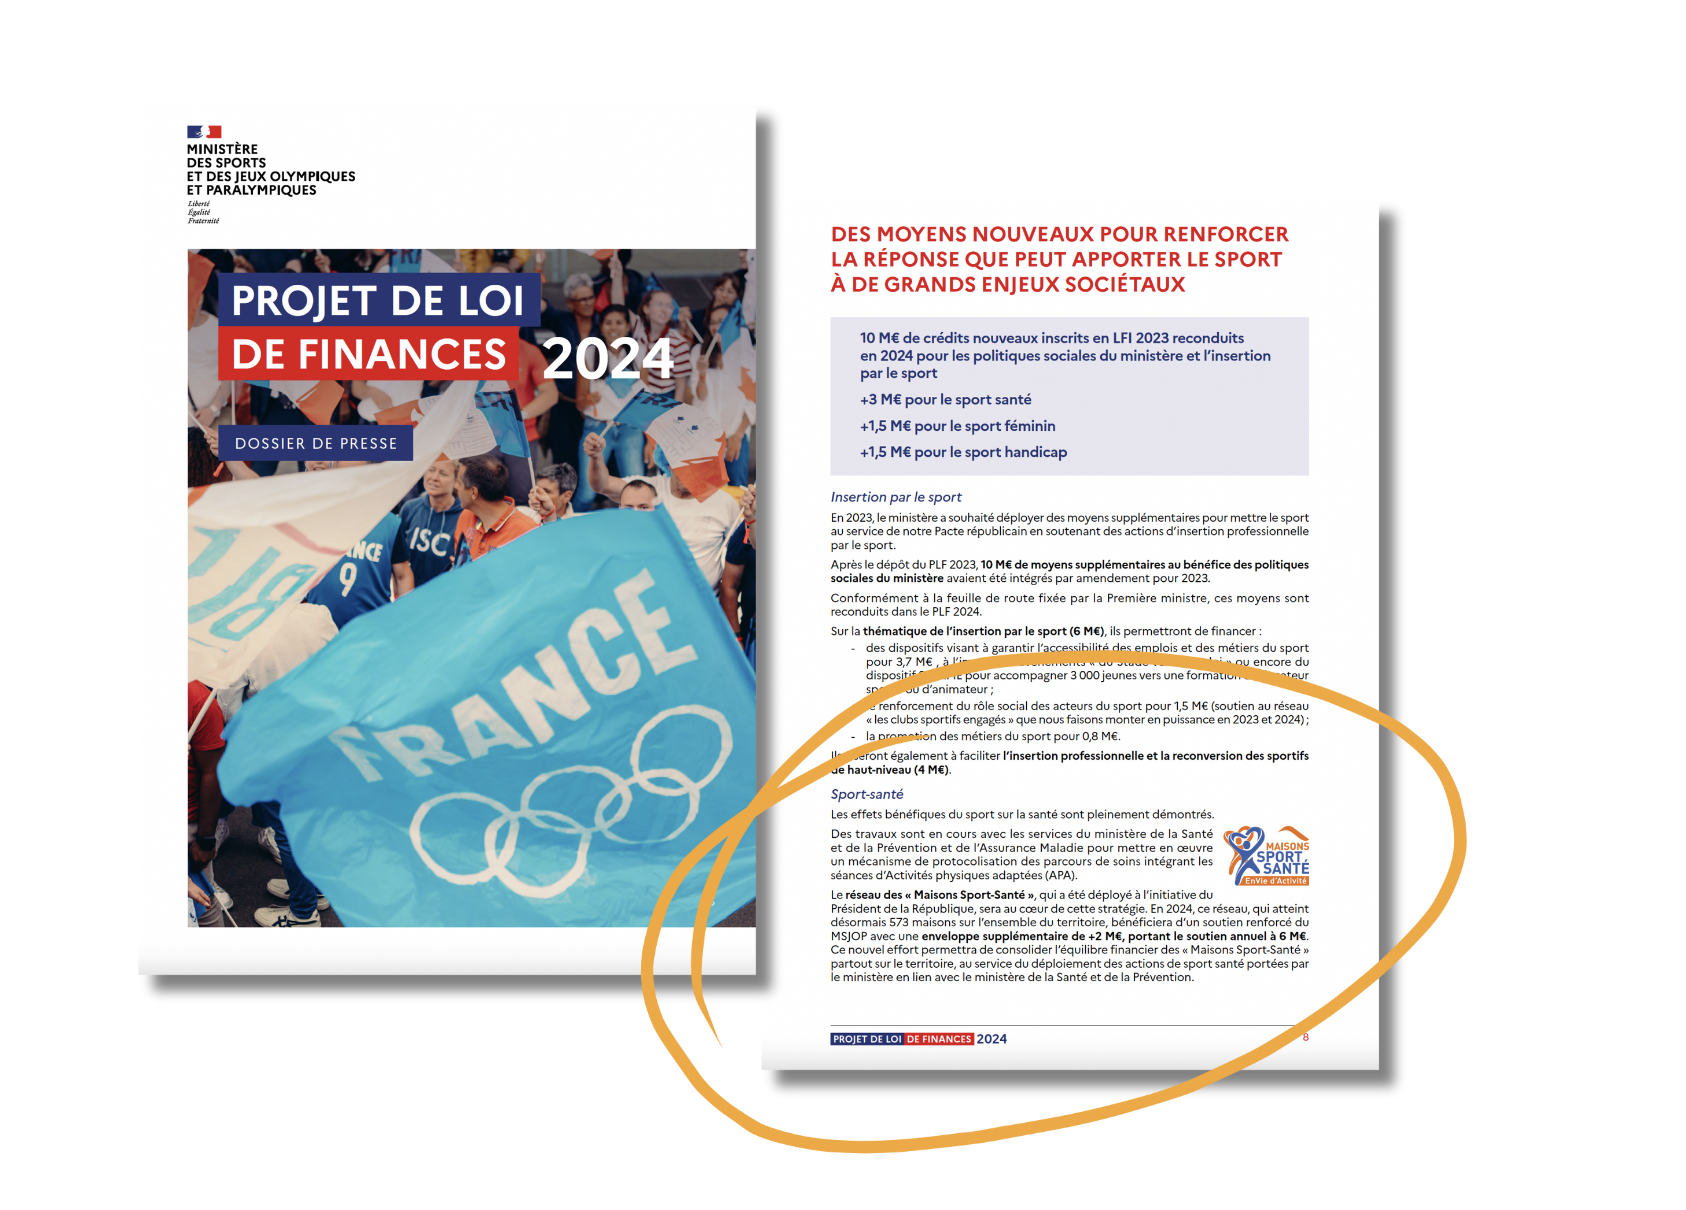 Une enveloppe supplémentaire de +2 M€ est accordée aux 573 Maisons Sport Santé du territoire en 2024 pour soutenir le déploiement des actions de sport santé